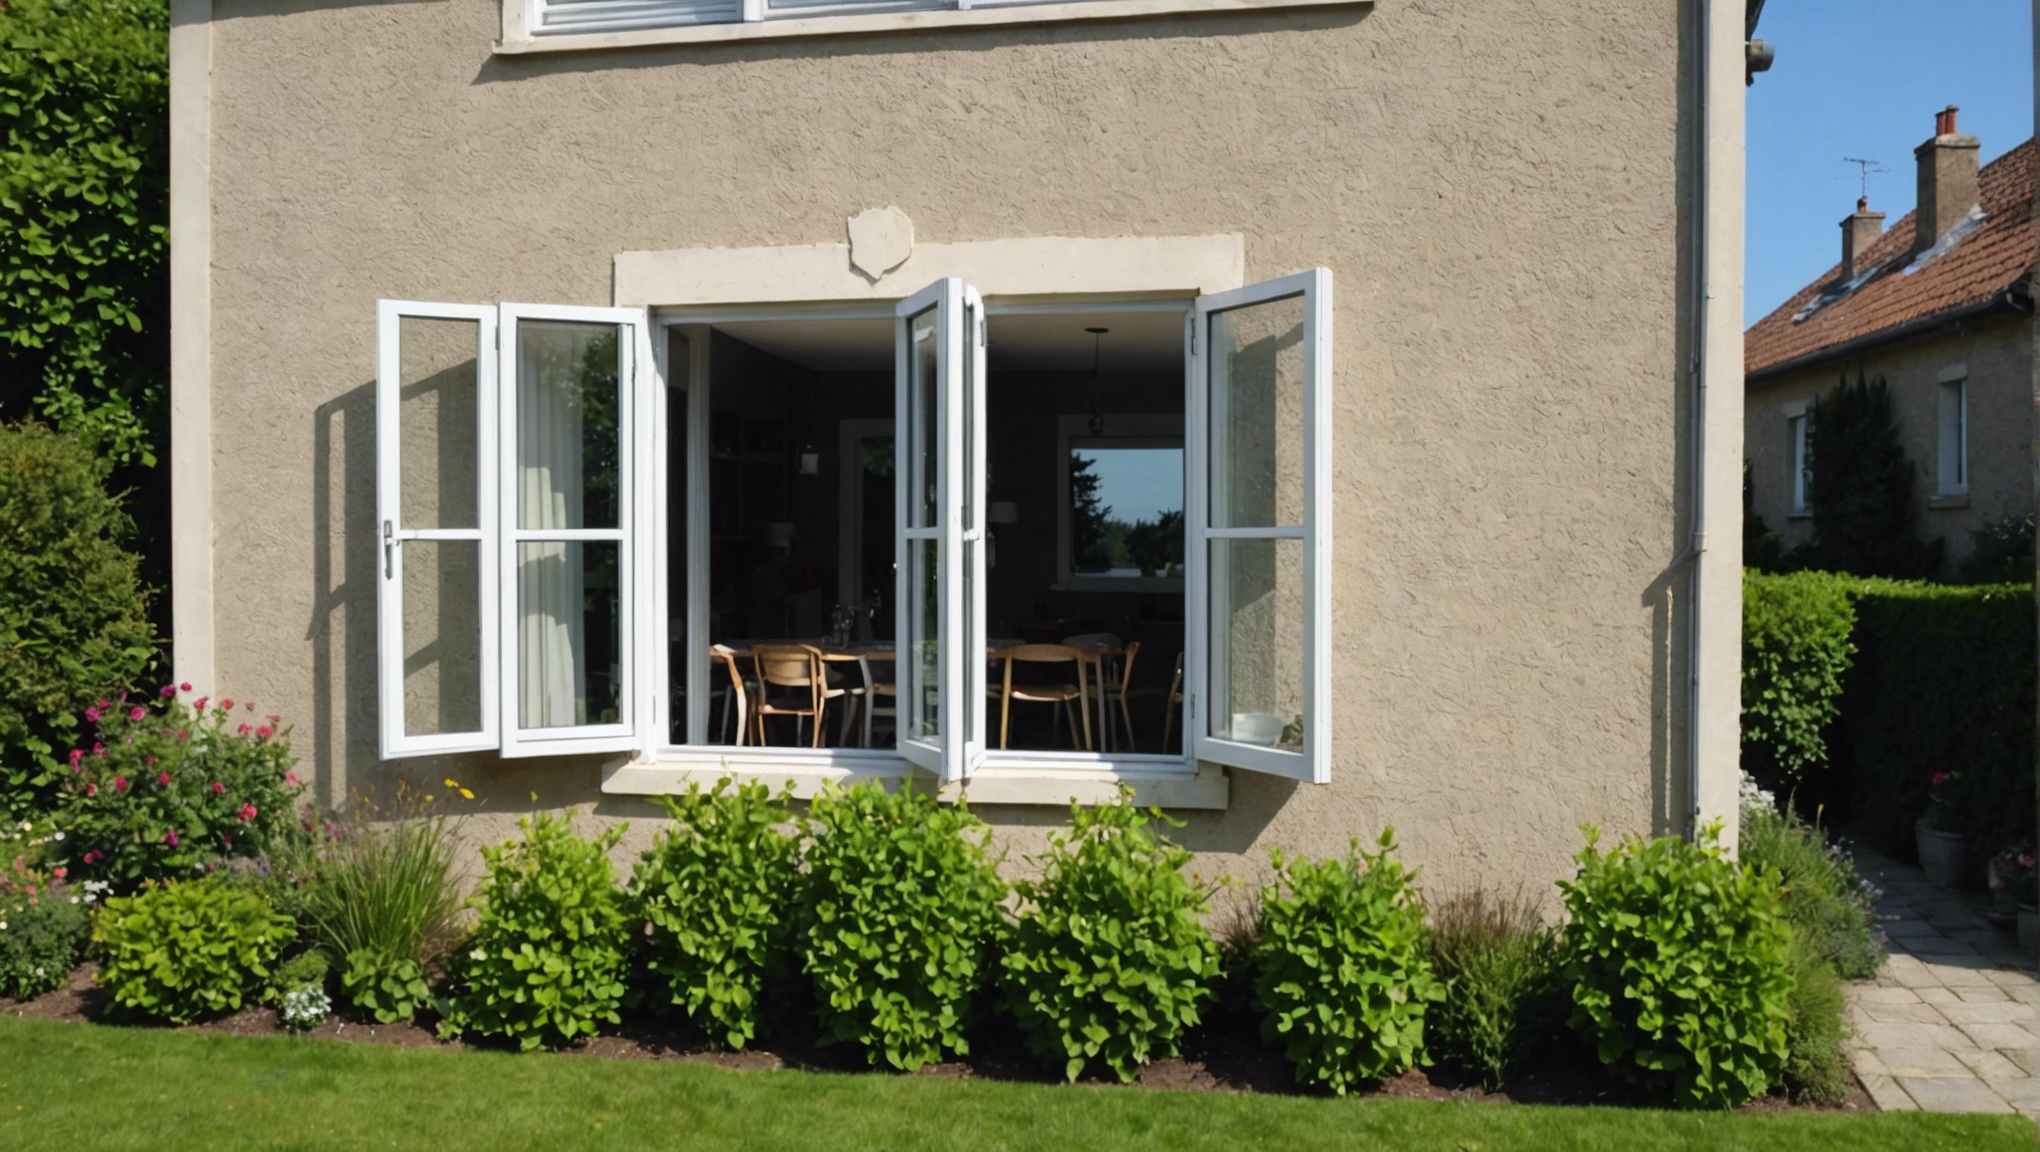 découvrez comment sélectionner la fenêtre idéale pour votre habitation avec nos conseils pratiques et astuces pour un confort optimal.